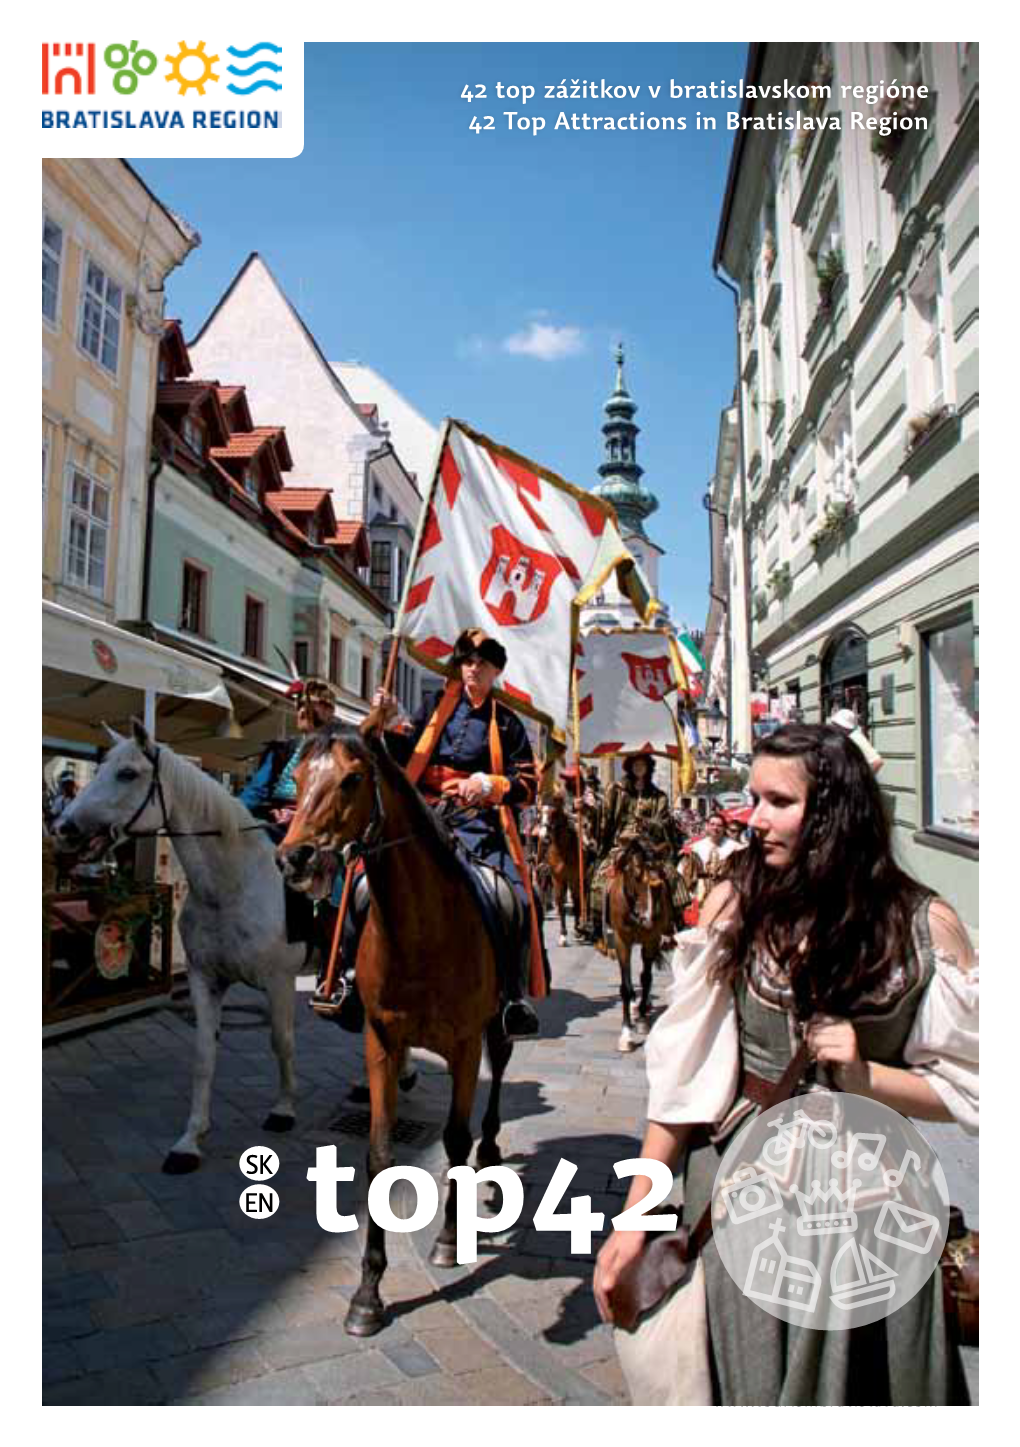 42 Top Zážitkov V Bratislavskom Regióne 42 Top Attractions in Bratislava Region